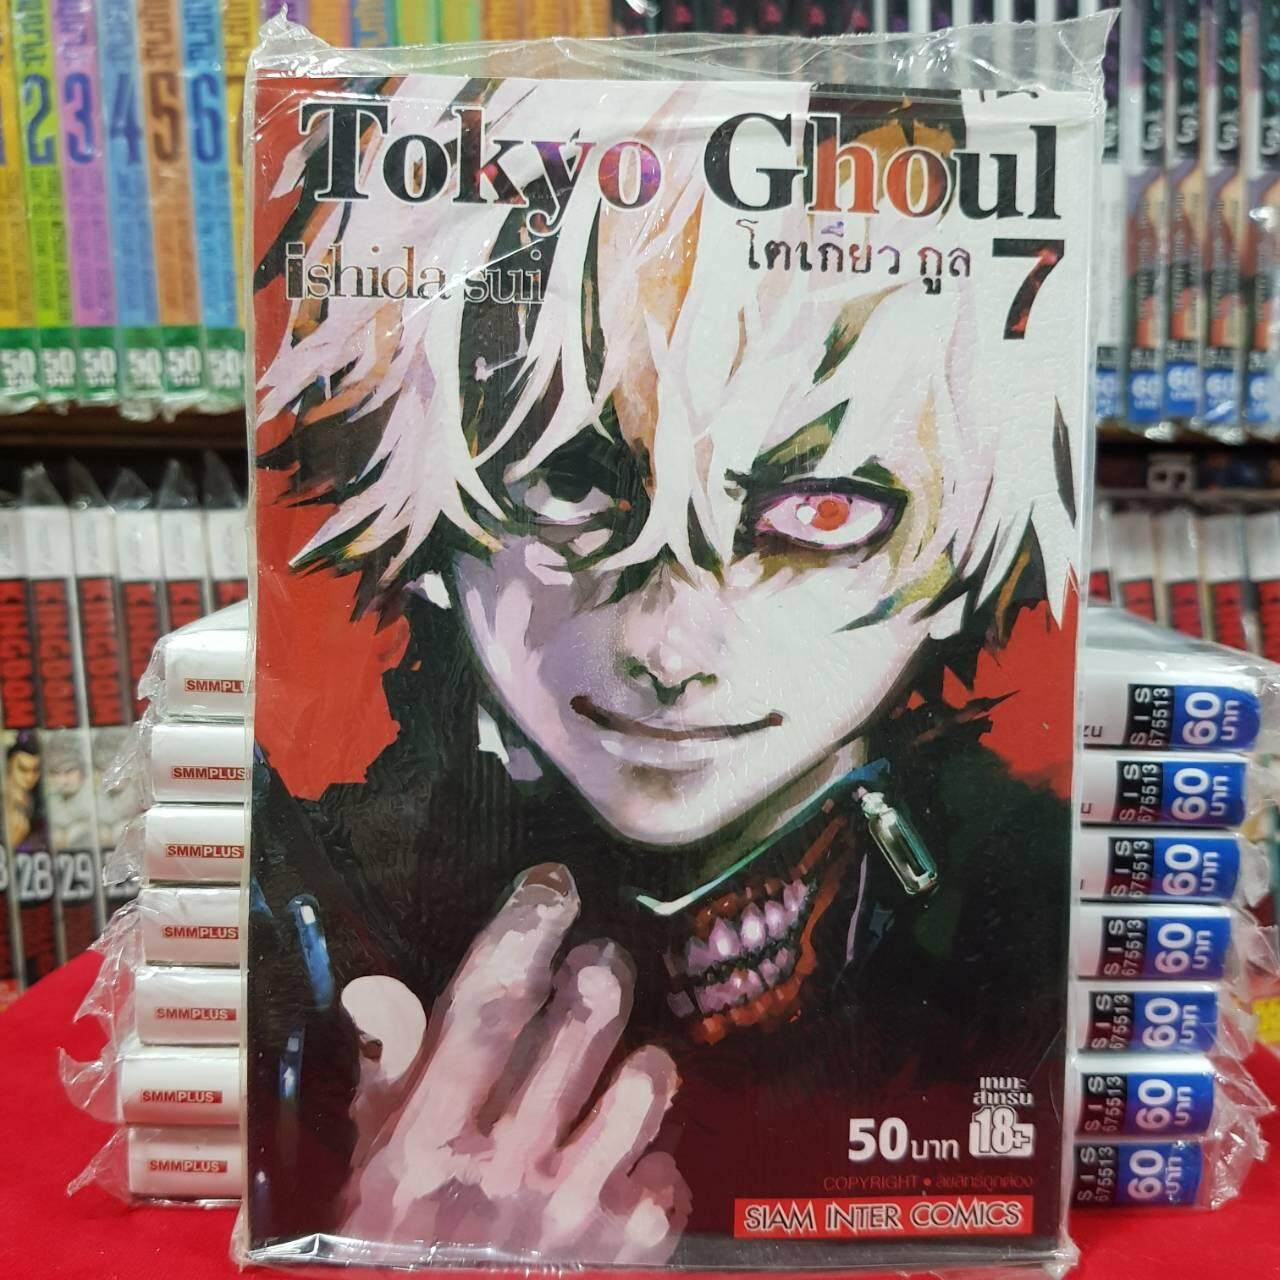 หนังสือการ์ตูน โตเกียว กูล Tokyo Ghoul เล่มที่ 7